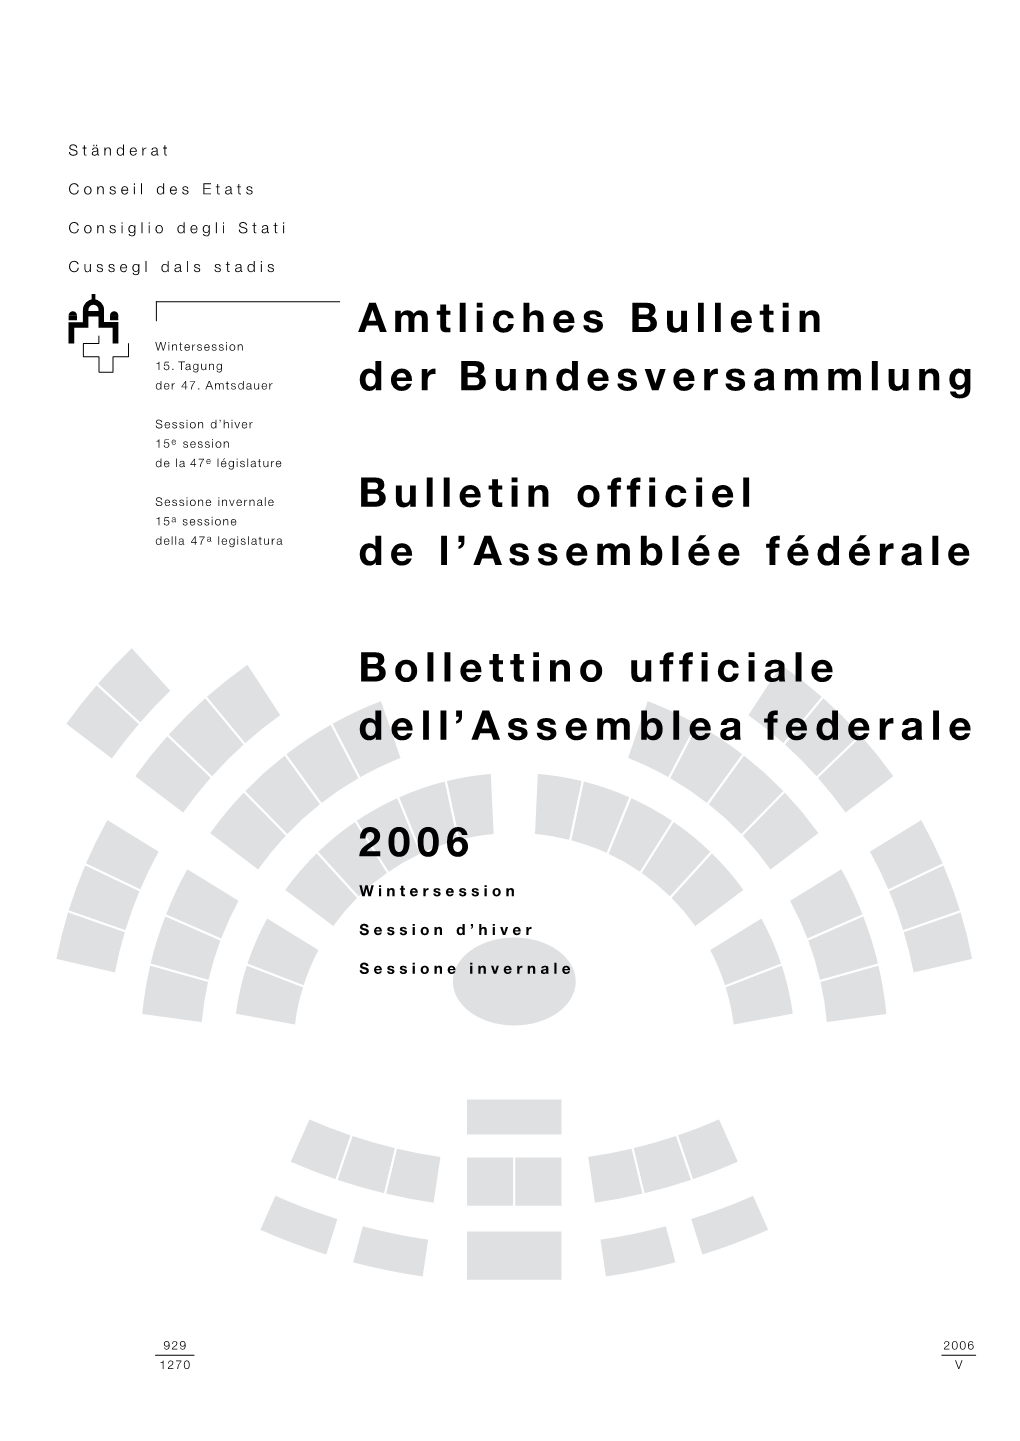 Amtliches Bulletin Der Bundesversammlung Bulletin Officiel De L’Assemblée Fédérale